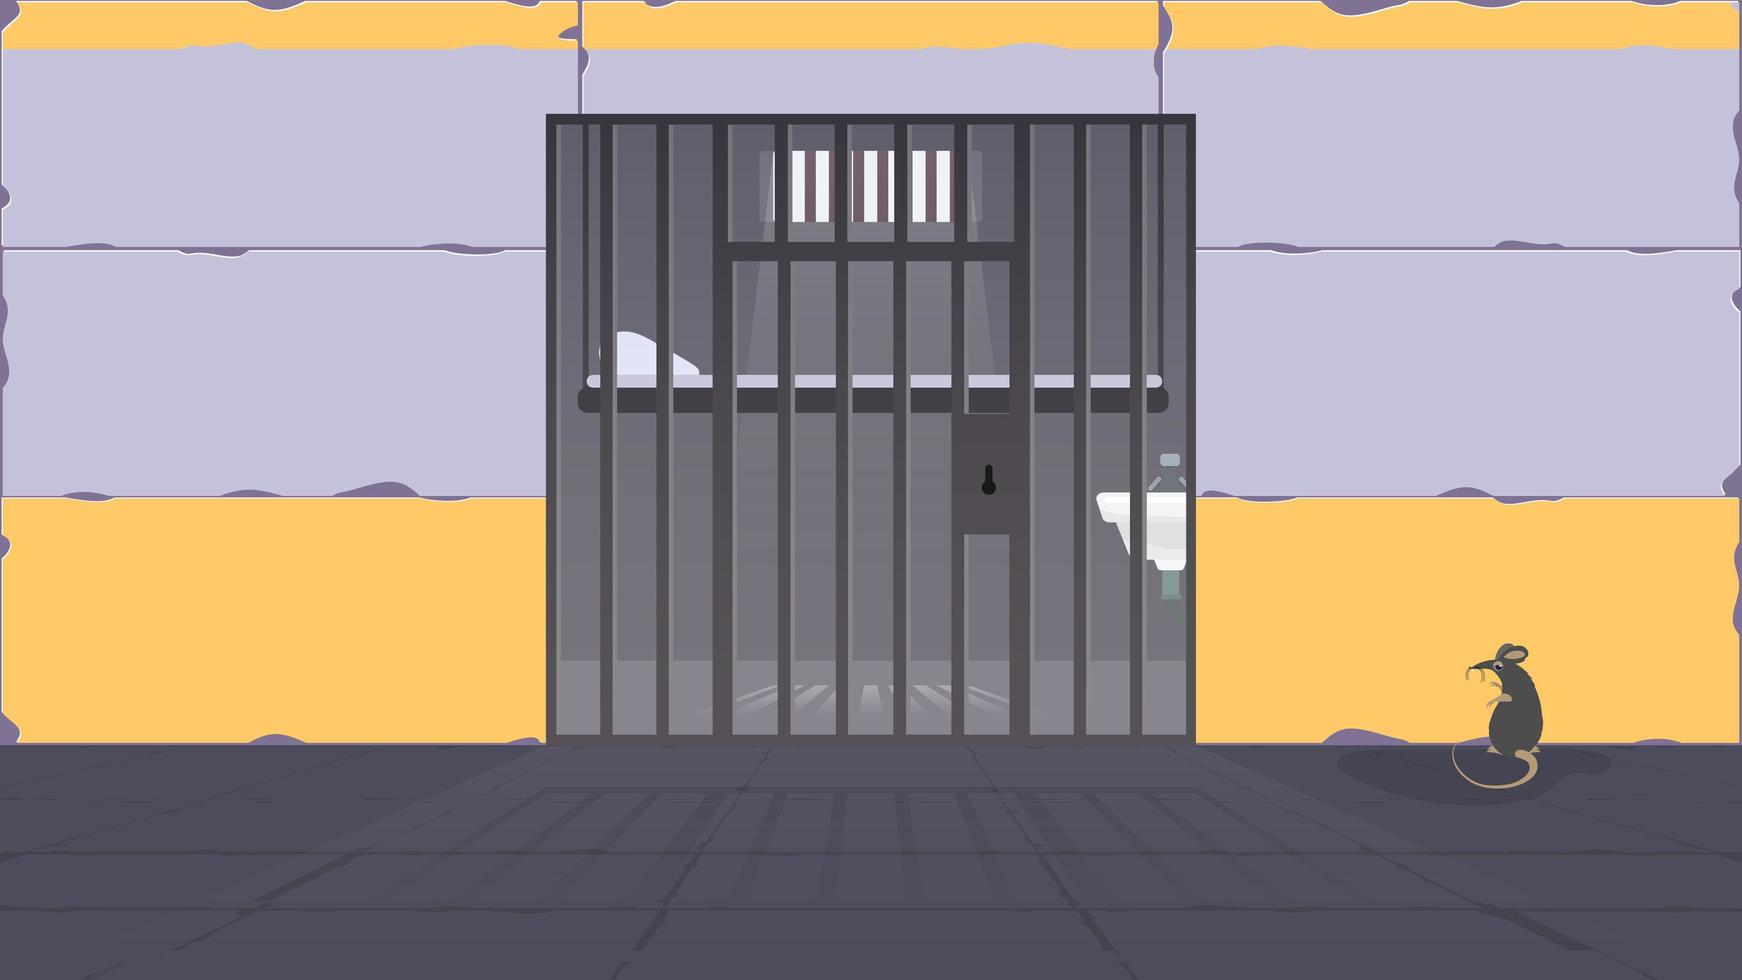 gevangeniscel. een gevangeniscel met een metalen rooster. gevangenis in cartoon-stijl. vector. vector